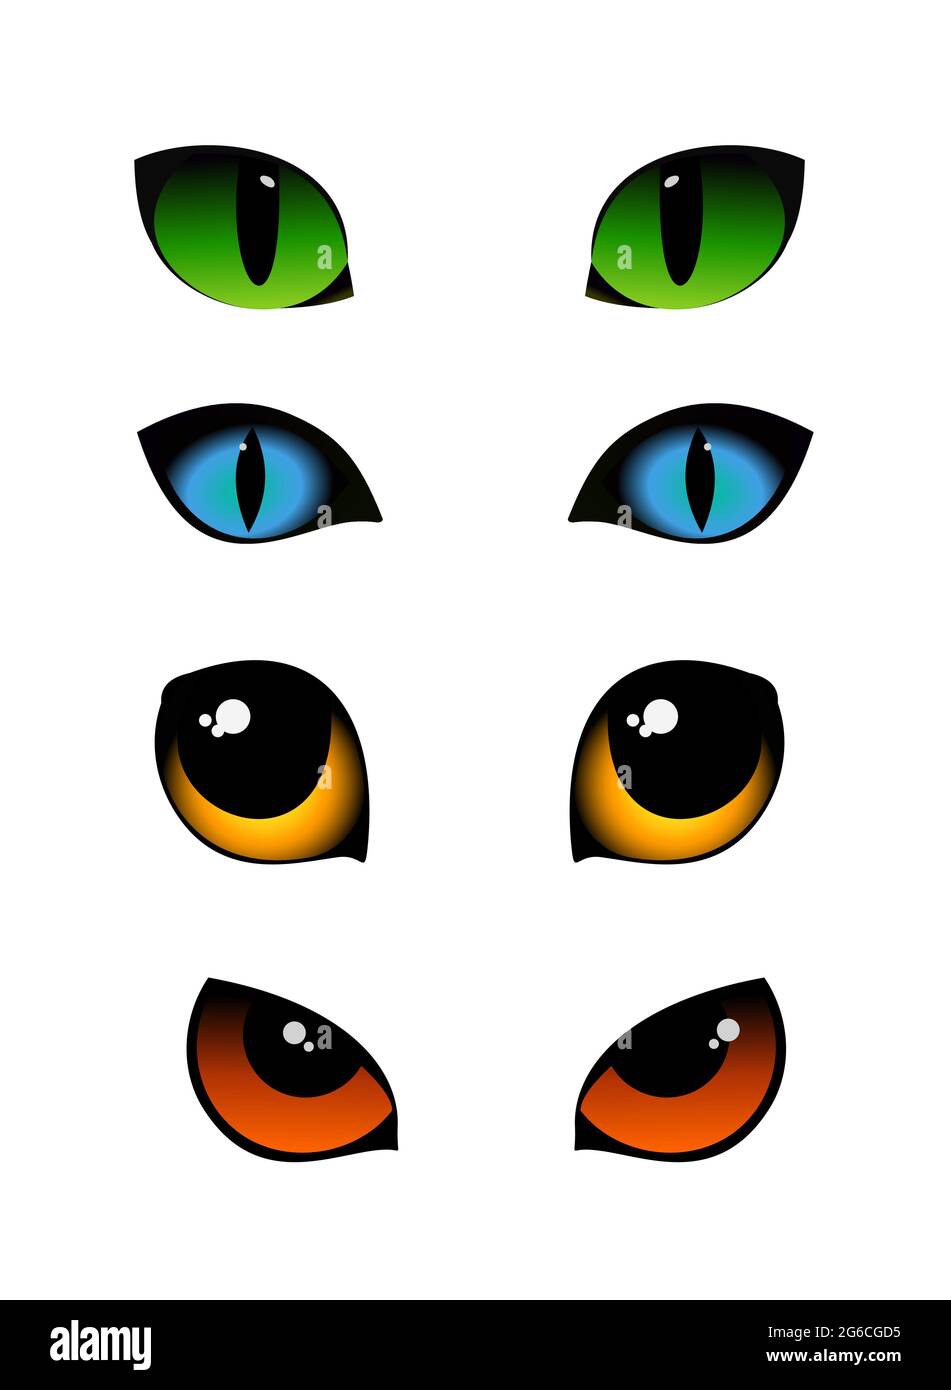 Illustrazione vettoriale insieme di emozioni gatto occhi in diversi colori isolati su sfondo bianco. Occhi di gatti verdi, blu e gialli. Illustrazione Vettoriale